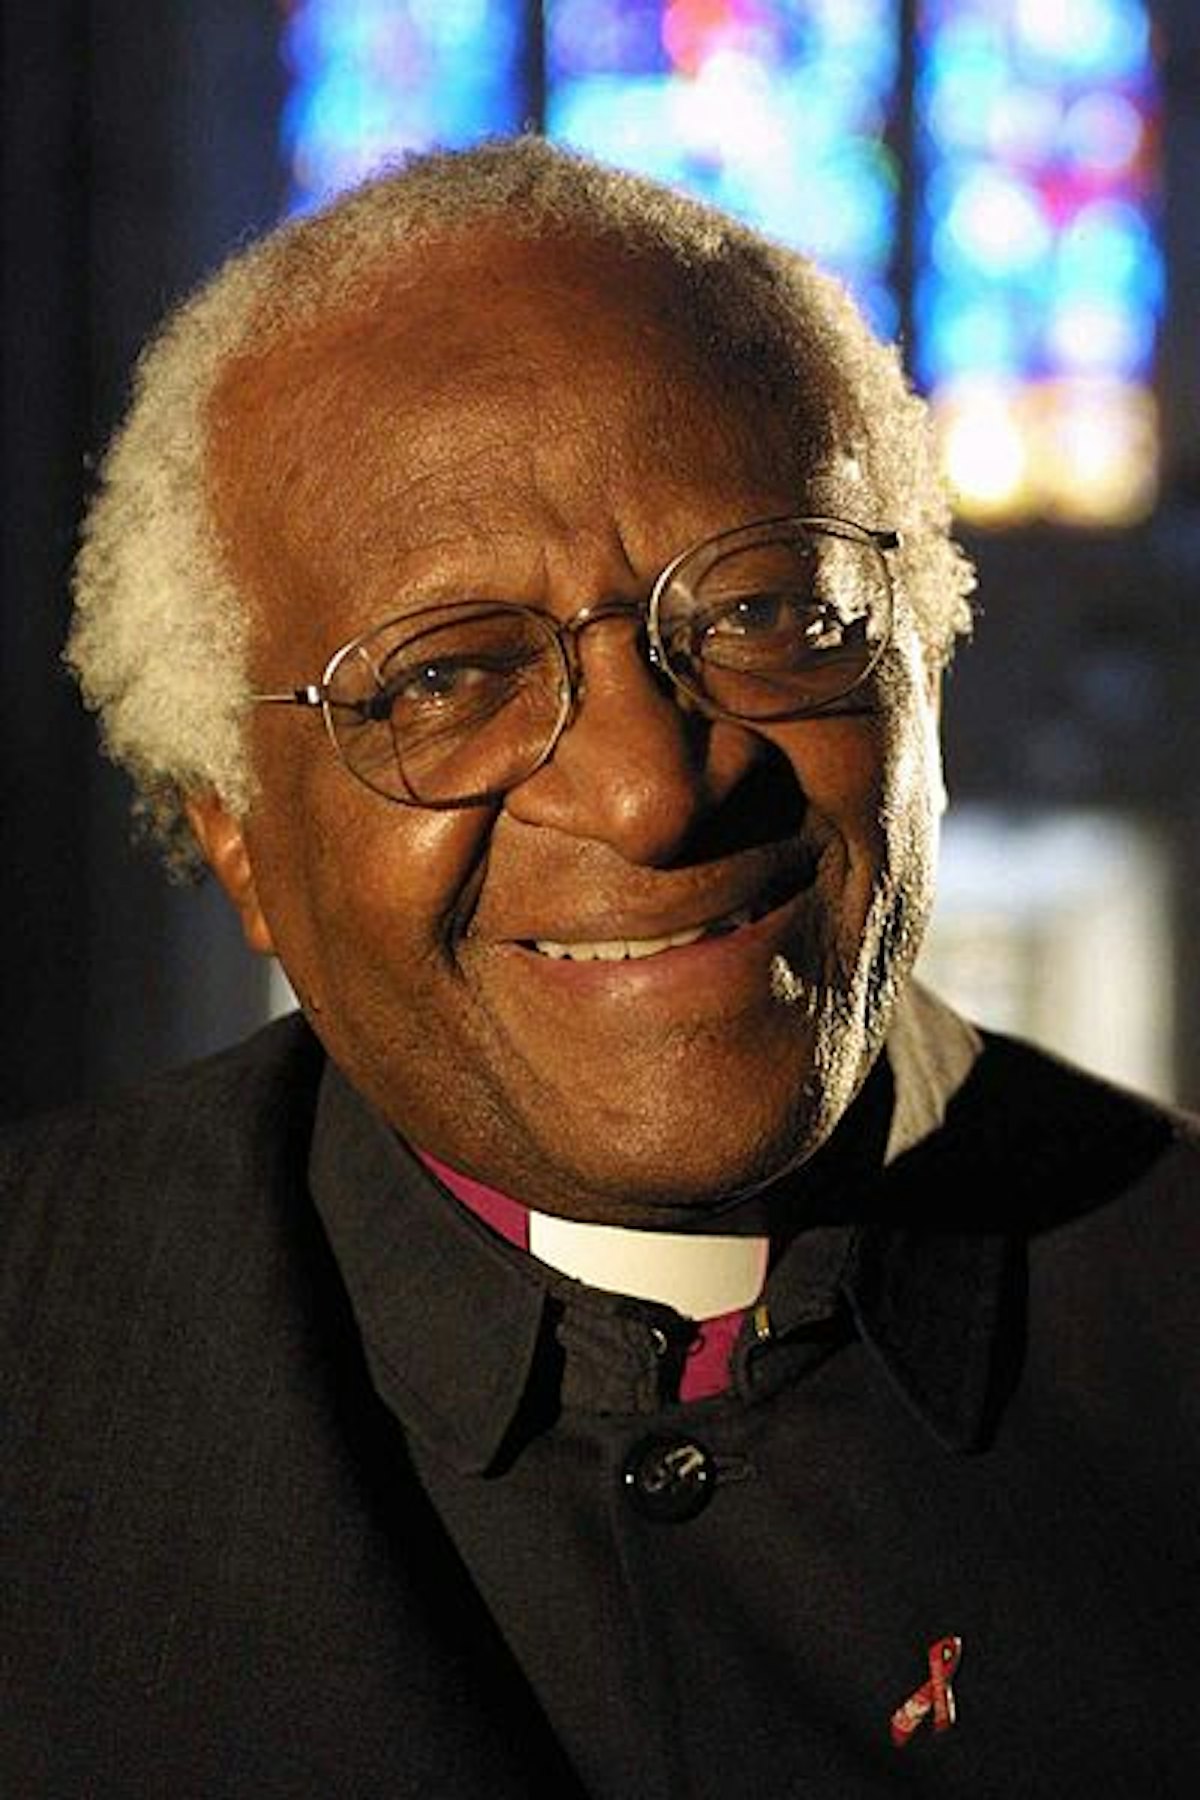 The Archbishop Desmond Tutu